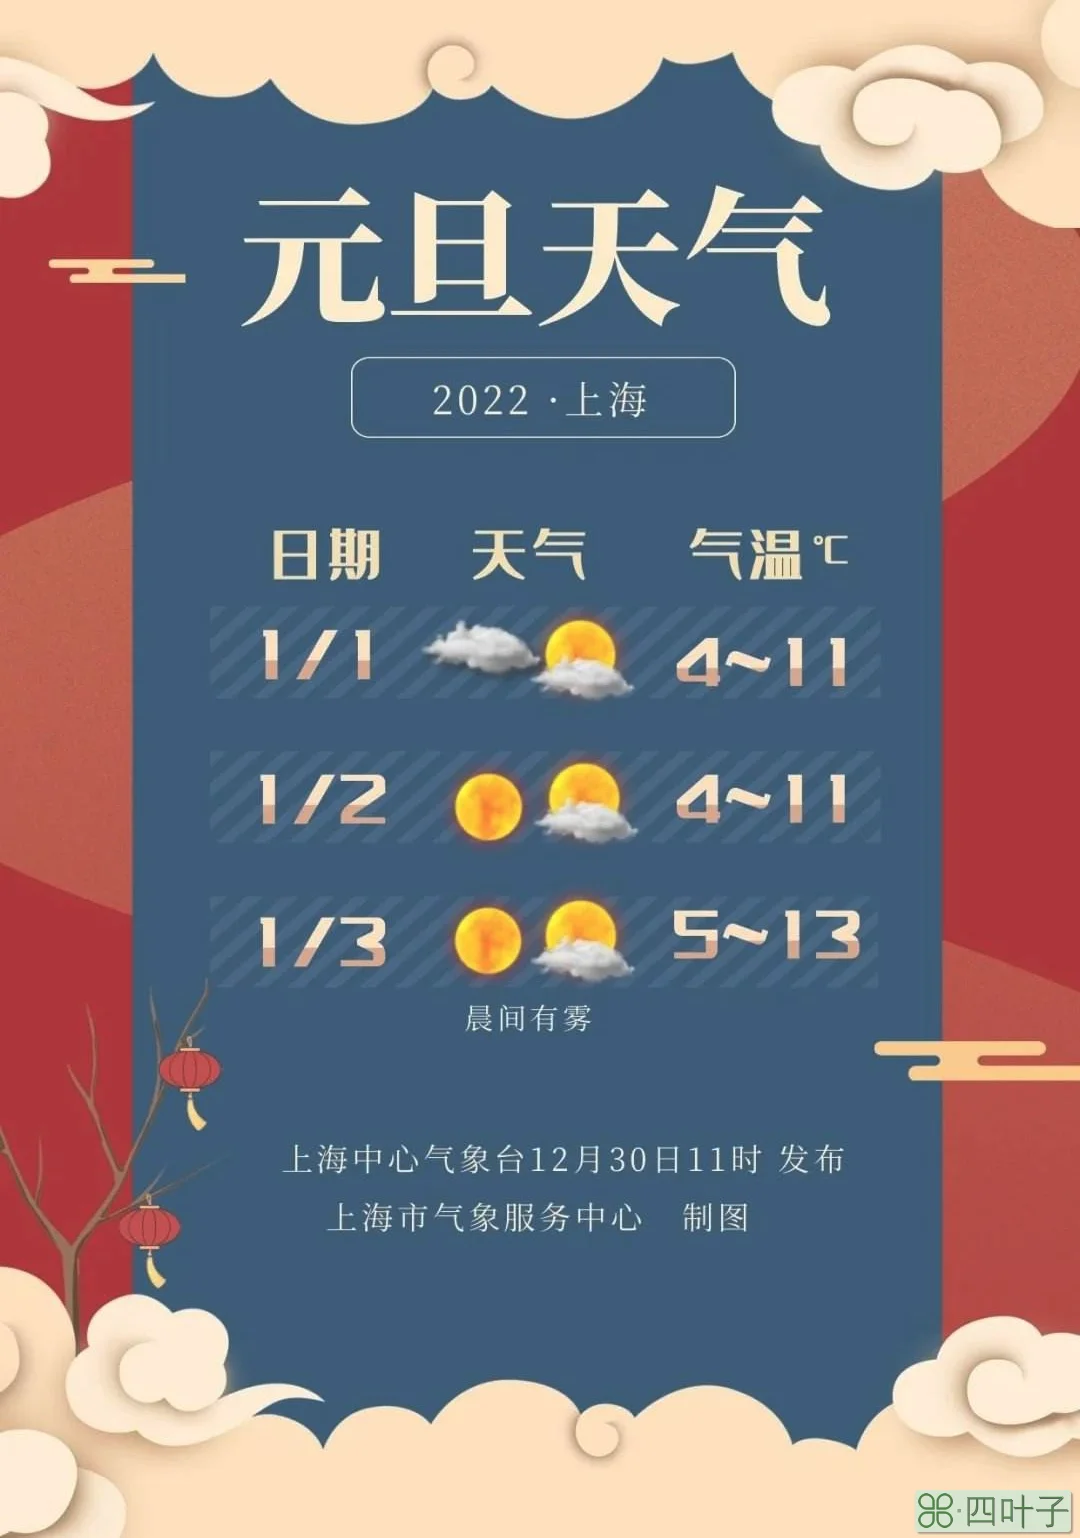 关于上海天气40天天气预报南浔天气预报的信息